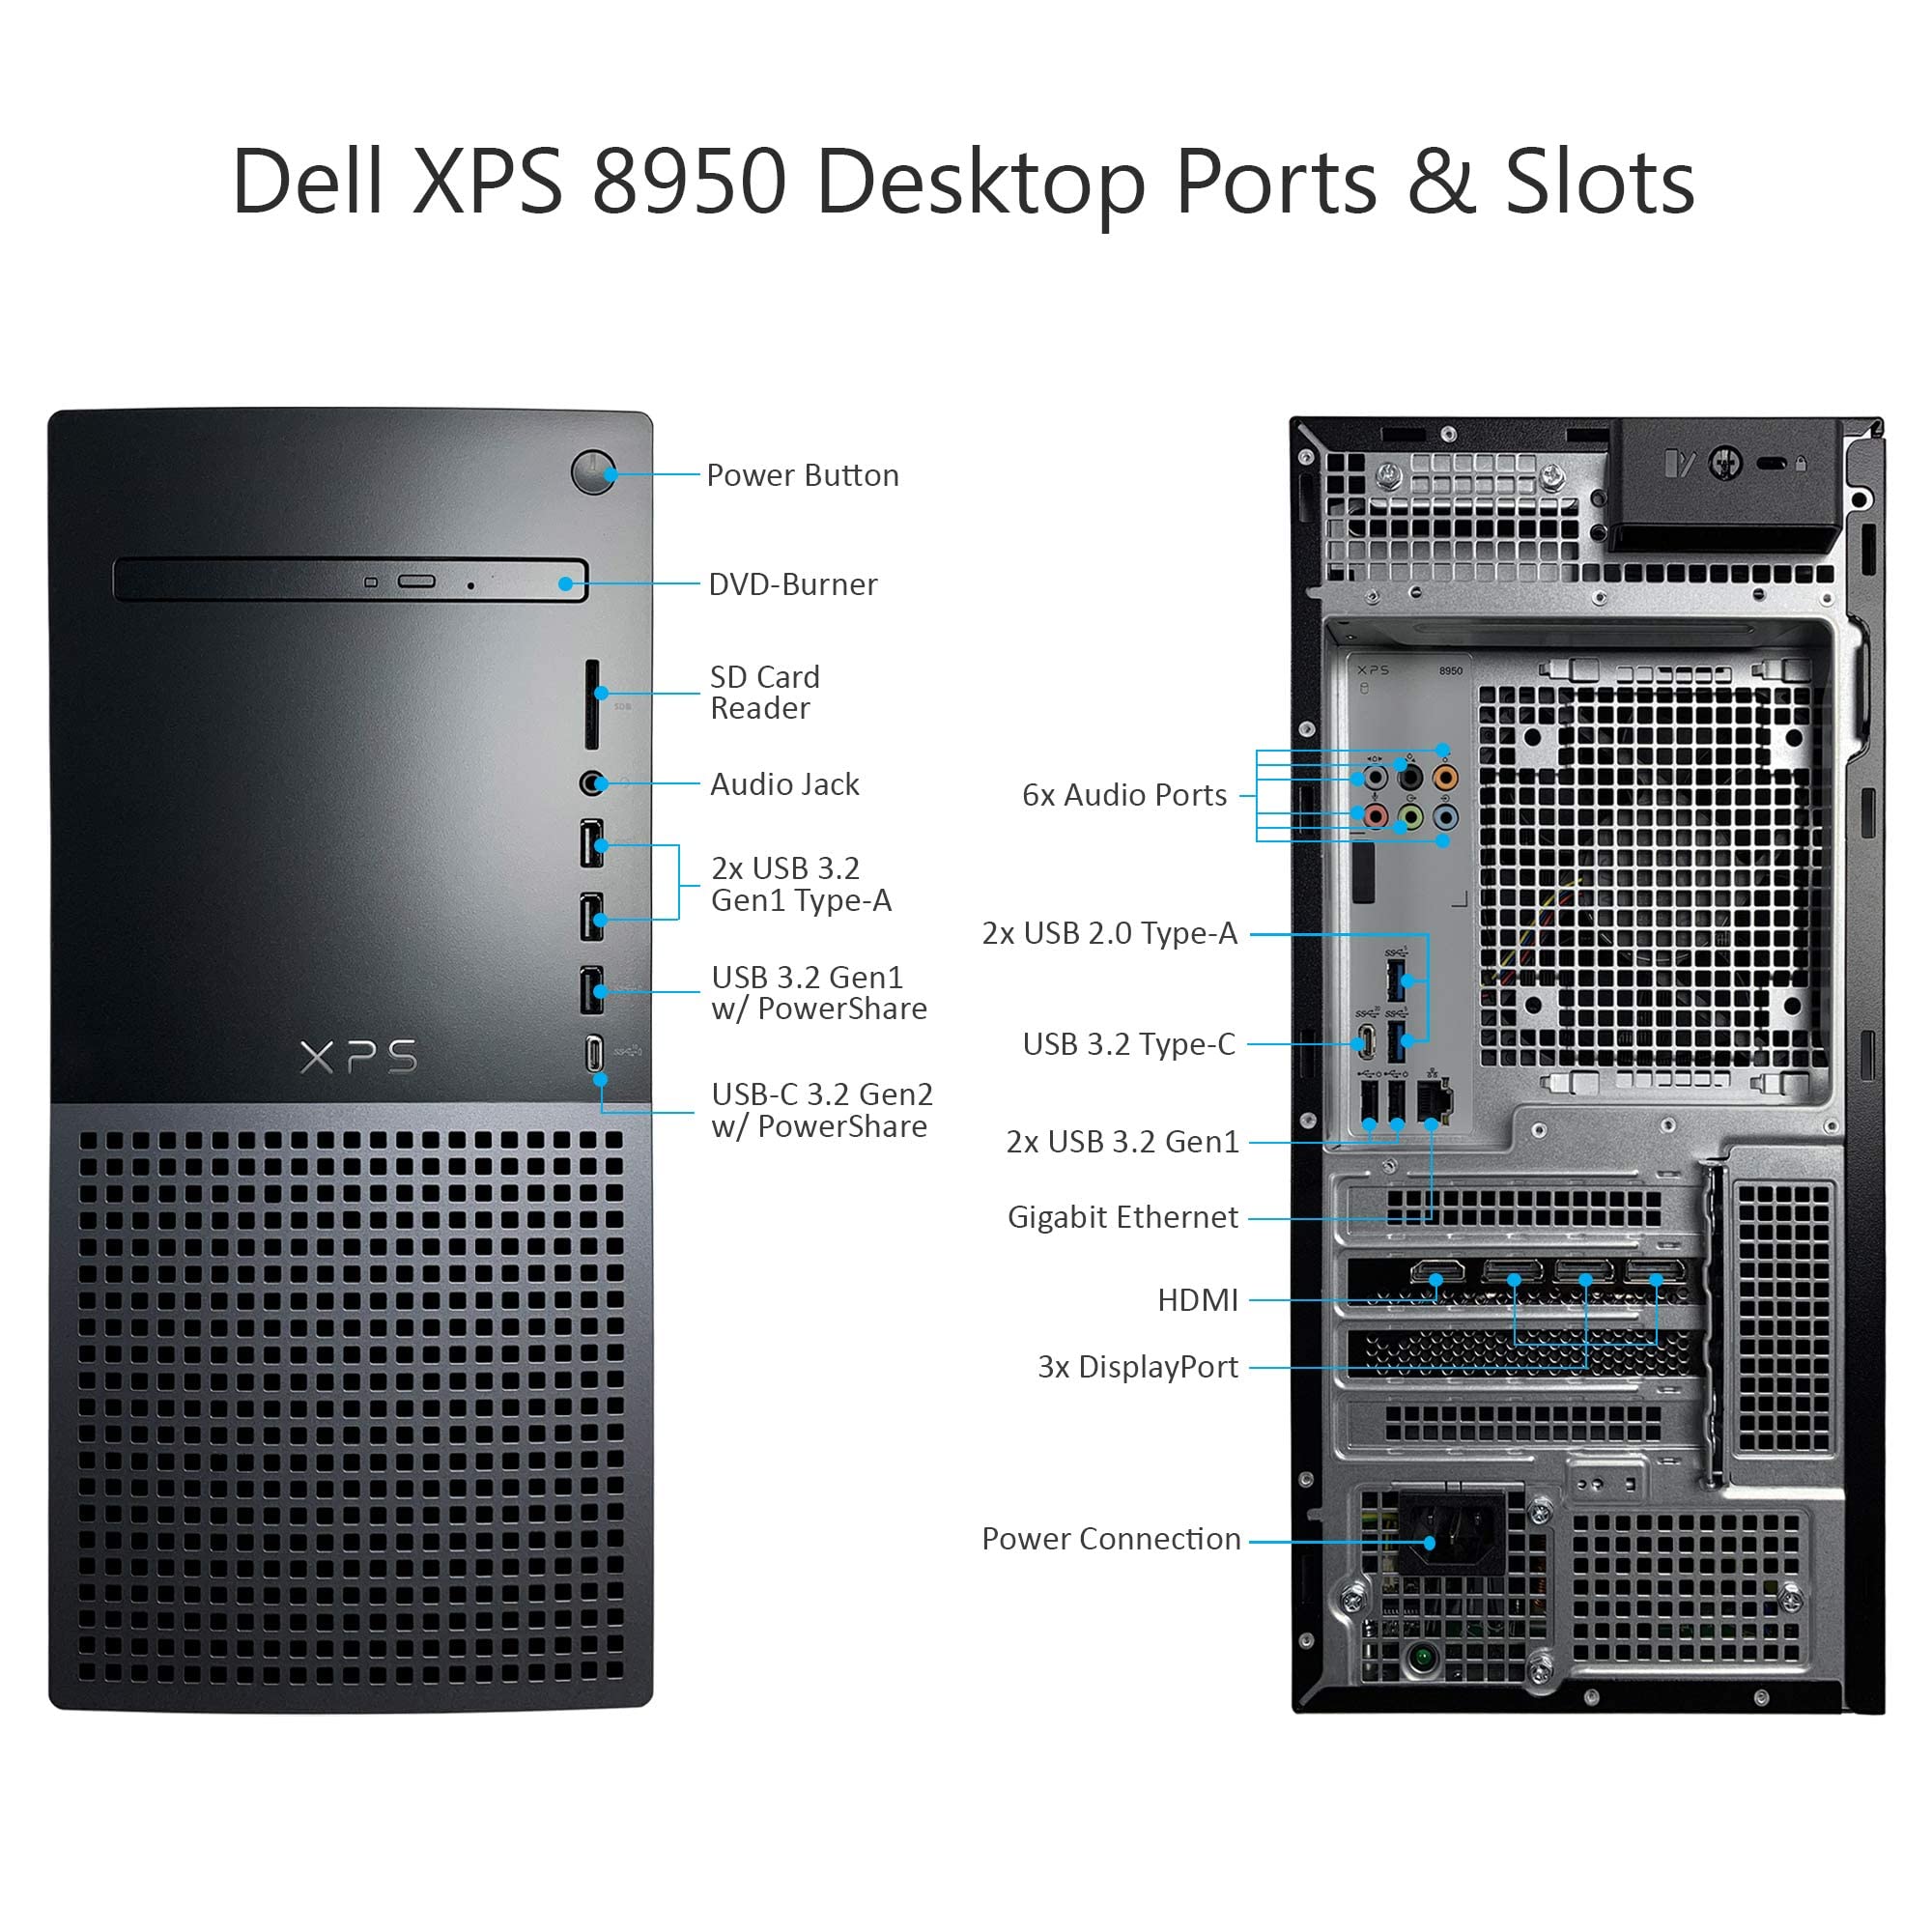 Dell XPS 8950 Desktop Computer - 12th Gen Intel Core i7-12700 up to 4.9 GHz CPU, 16GB DDR5 RAM, 512GB NVMe SSD, GeForce RTX 3060Ti 8GB GPU, Killer Wi-Fi 6, DVD Burner, Windows 11 Pro (Renewed)